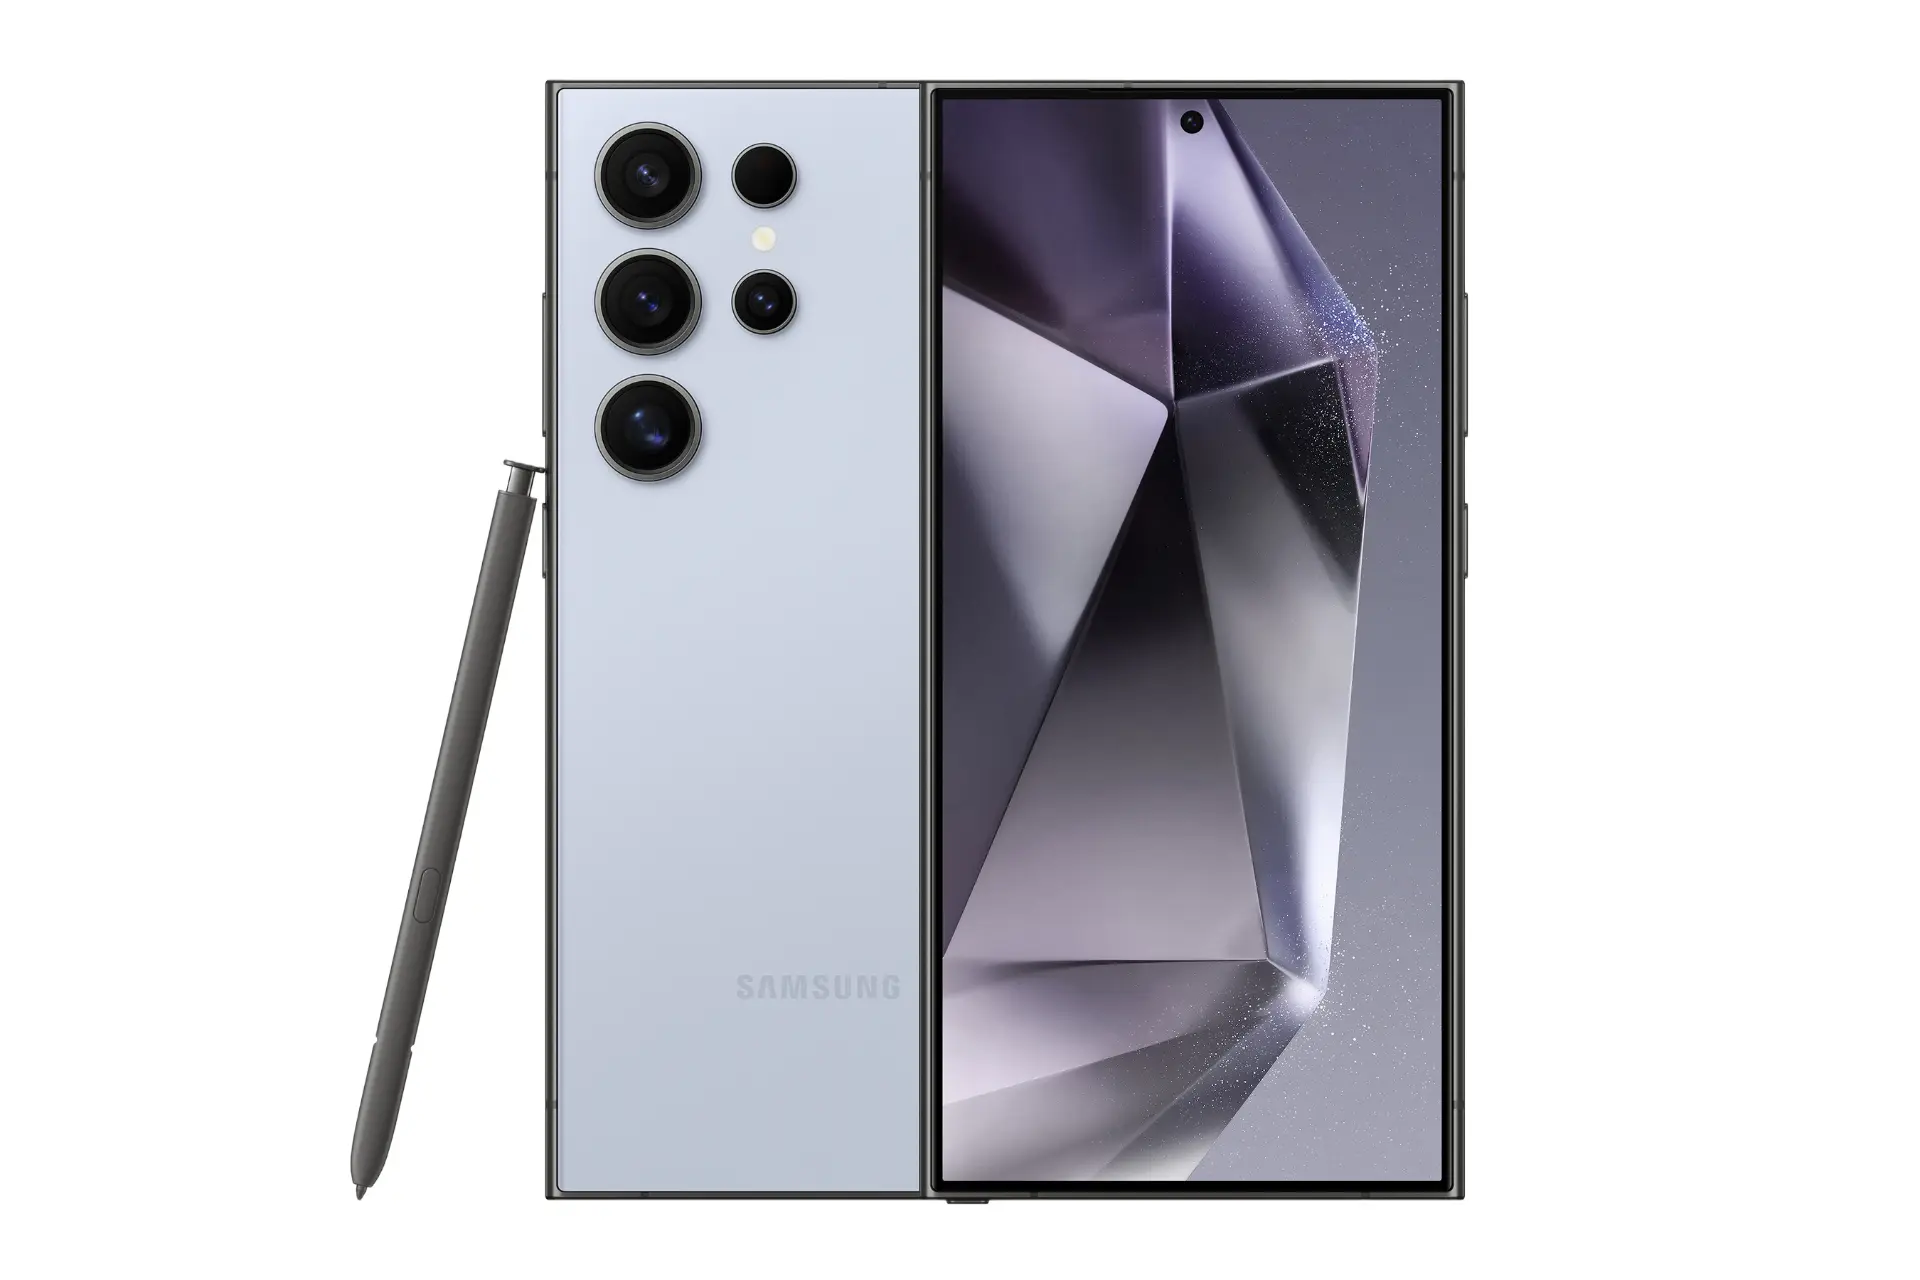 نمای کلی گوشی موبایل گلکسی اس 24 اولترا سامسونگ مشکی / Samsung Galaxy S24 Ultra با نمایشگر روشن و نمایش لوگو، دوربین های پنل پشت و قلم رنگ آبی